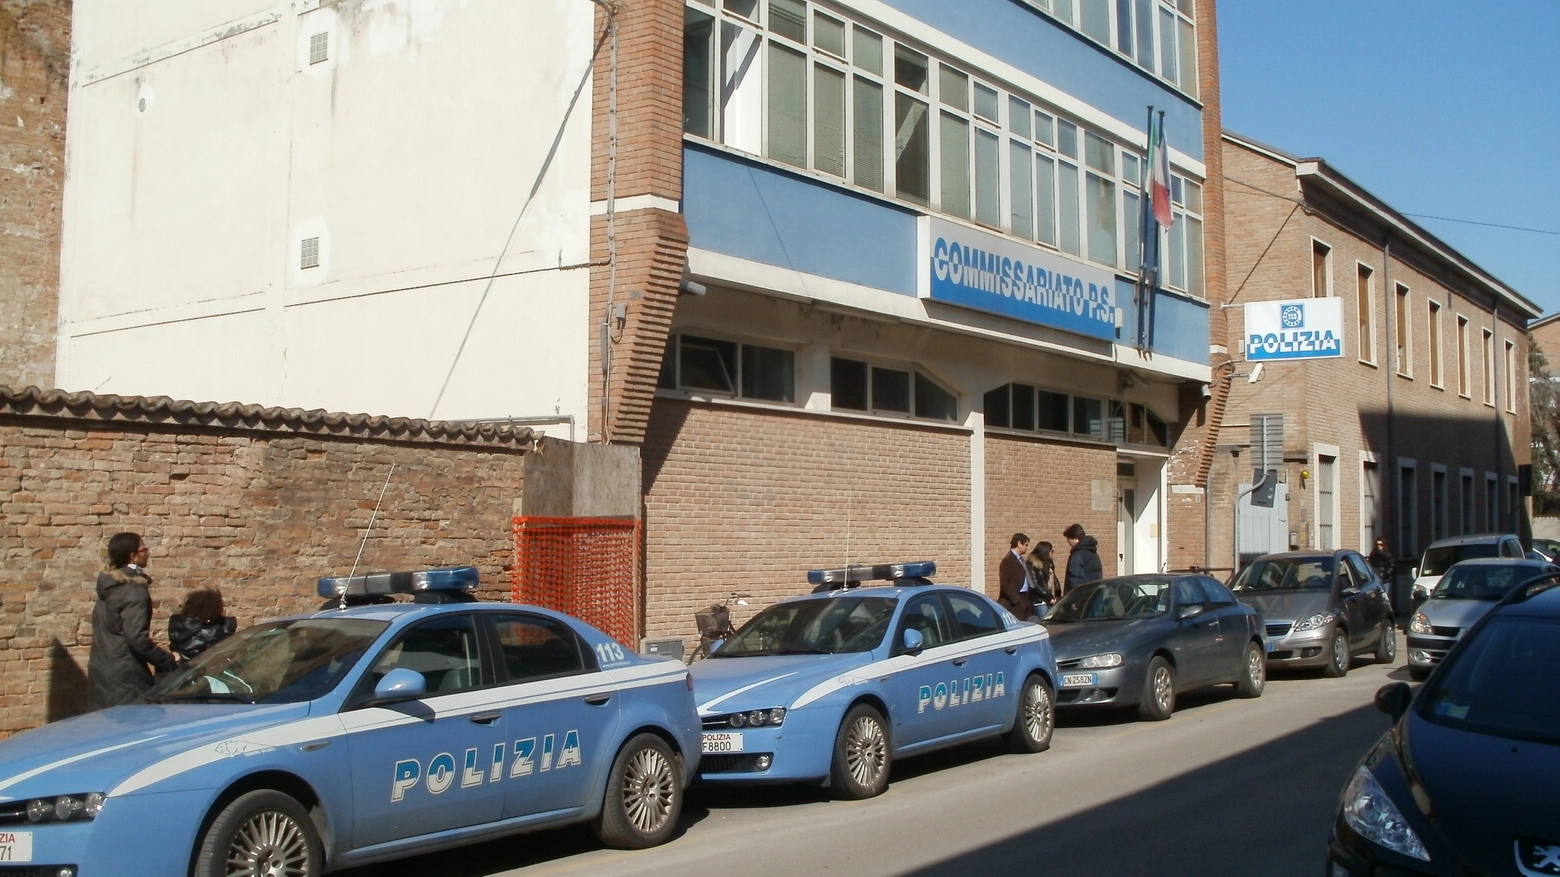 Il Commissariato di Polizia di Lugo (Scardovi)